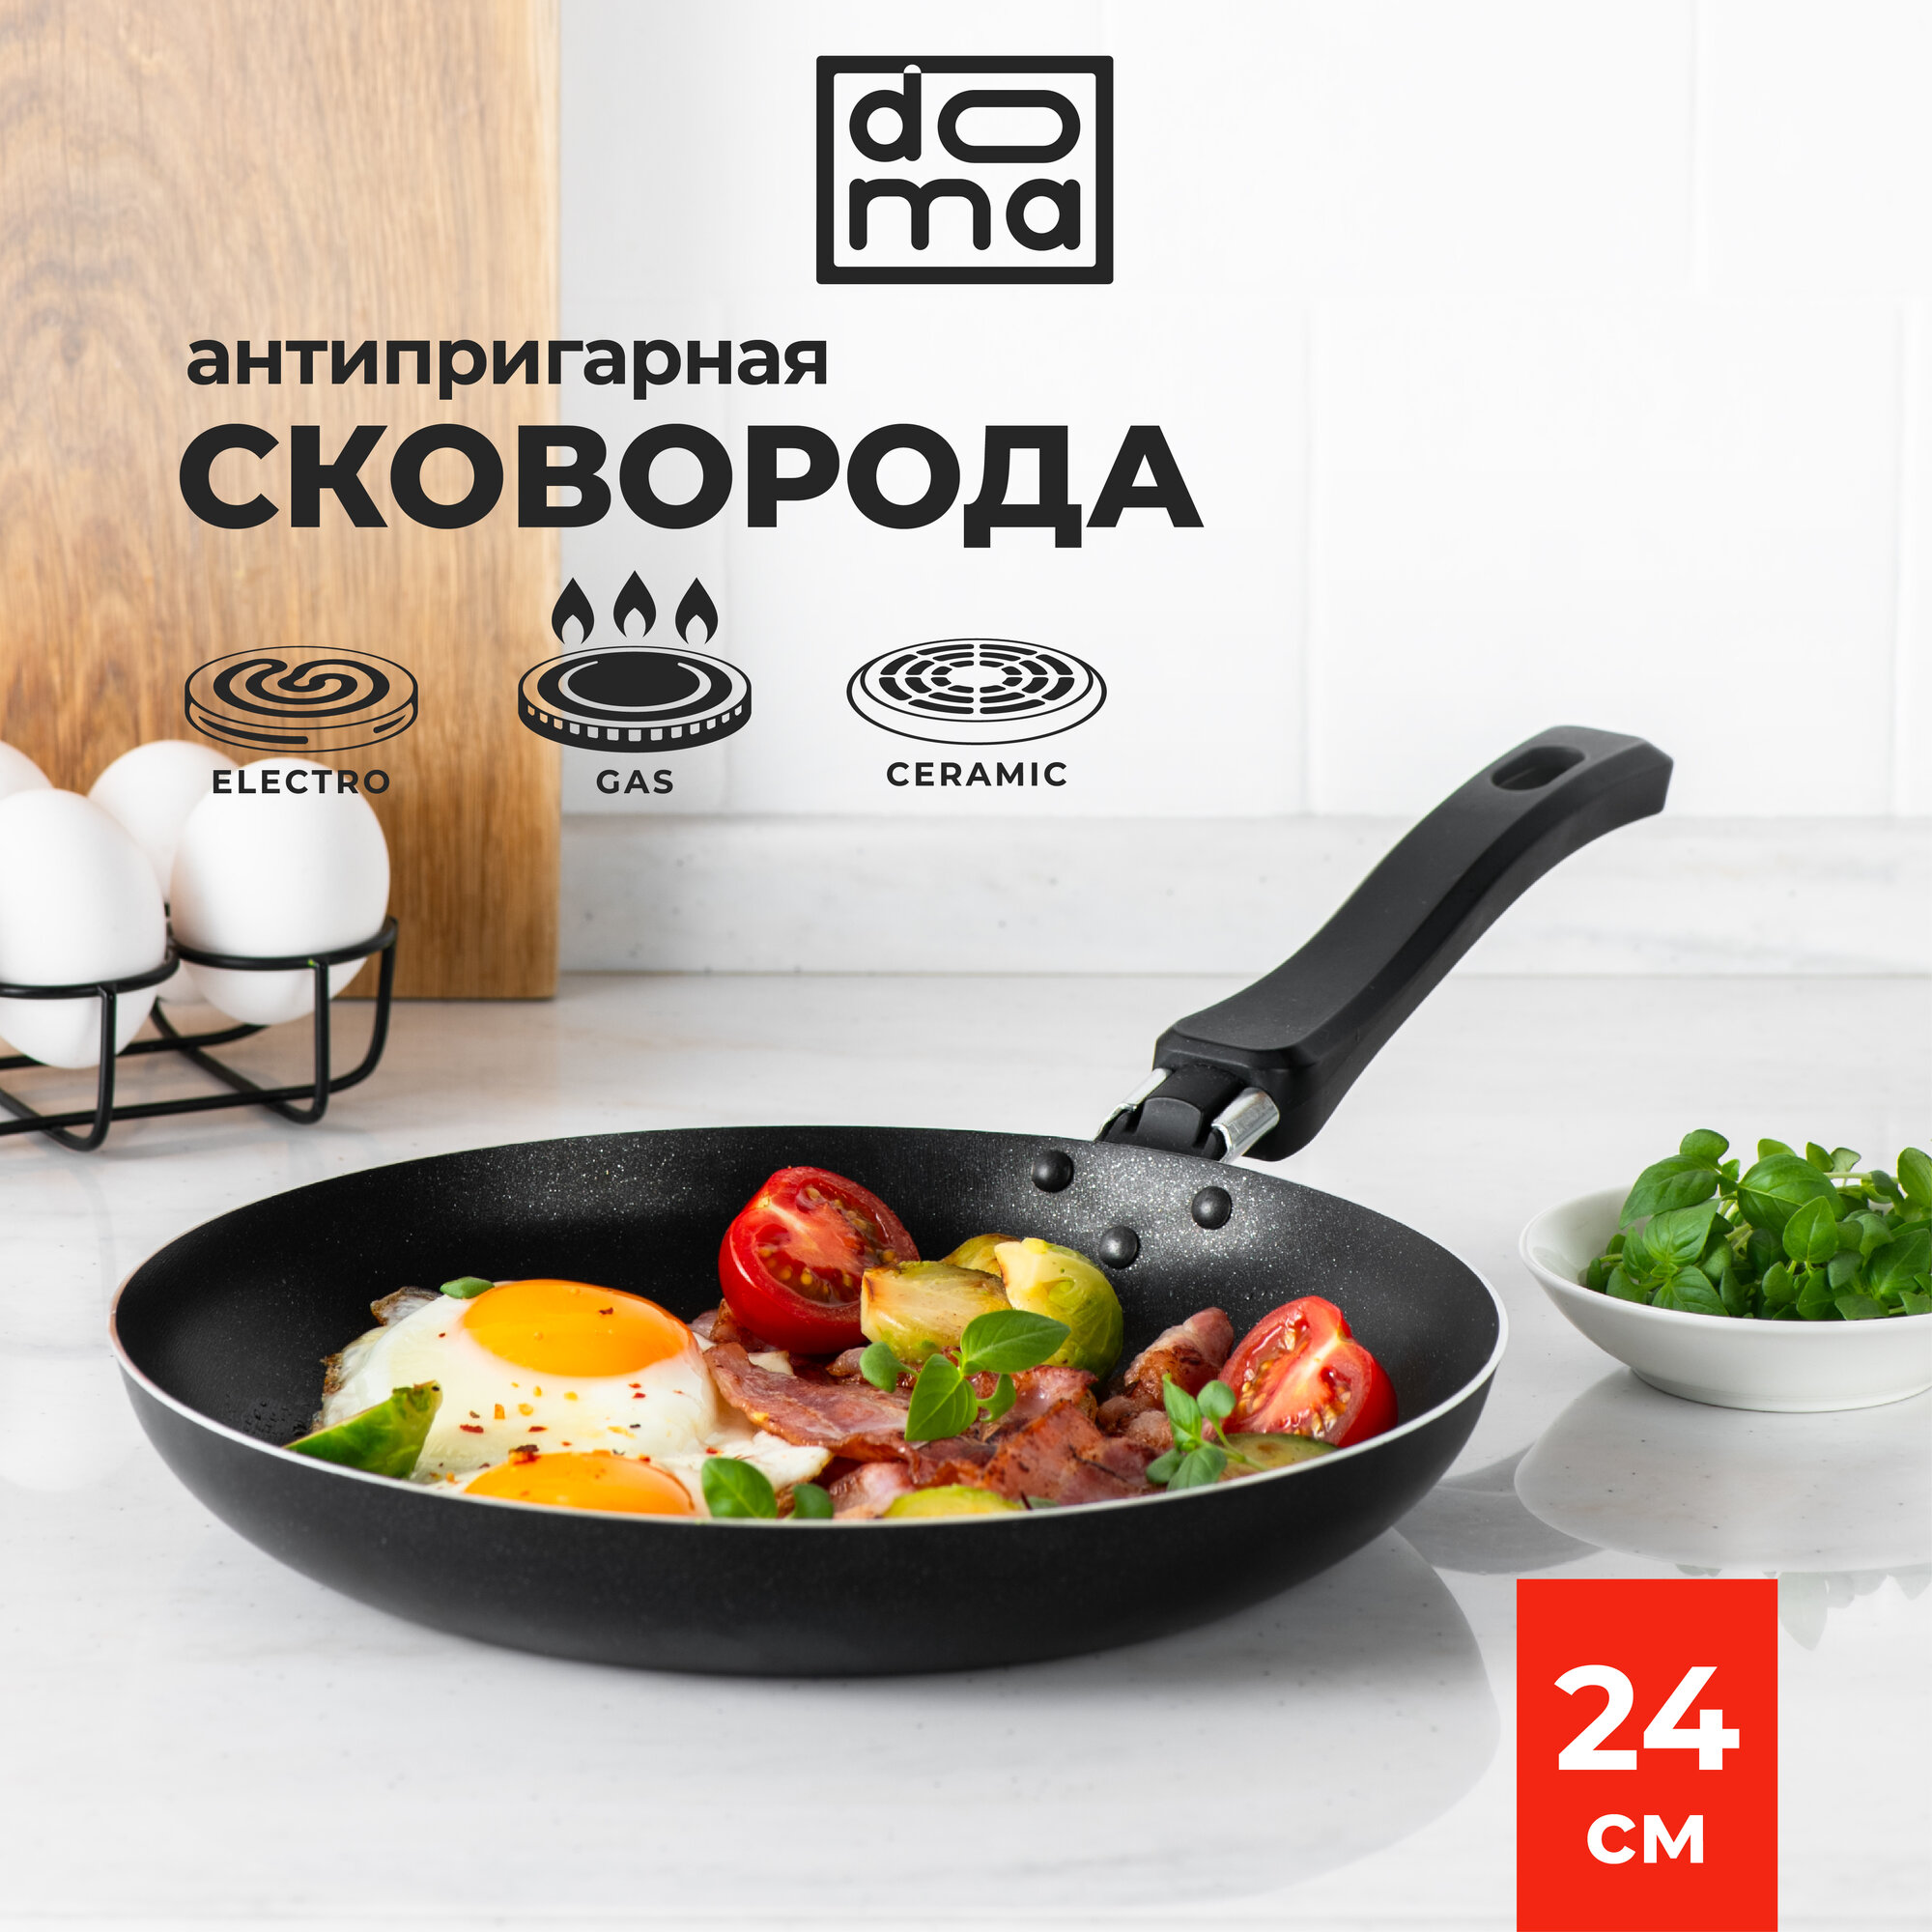 Сковорода Doma Constant Promo 24 см